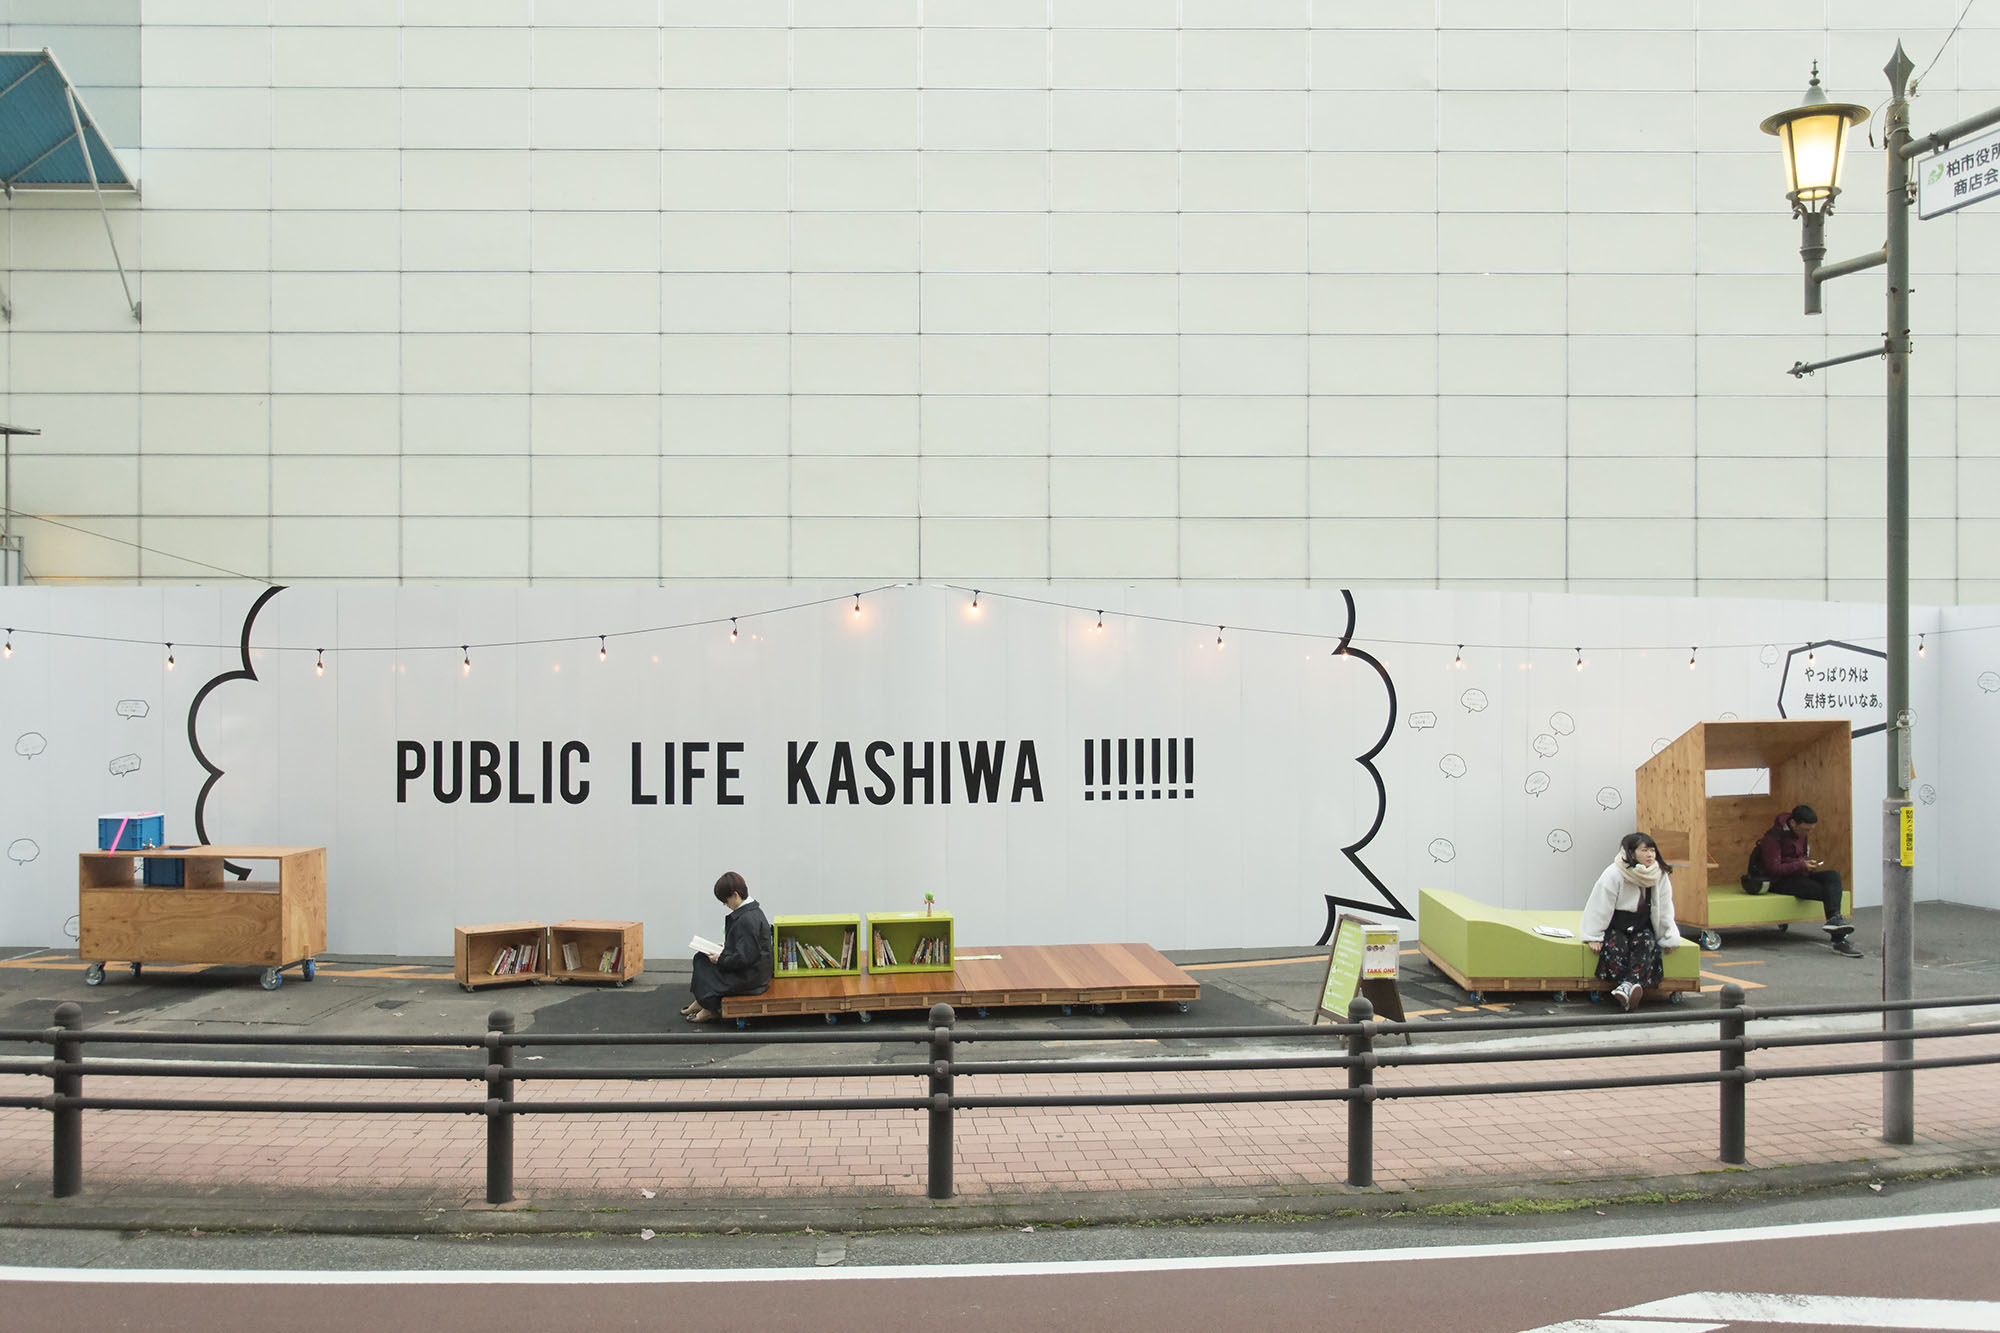 PUBLIC LIFE KASHIWA